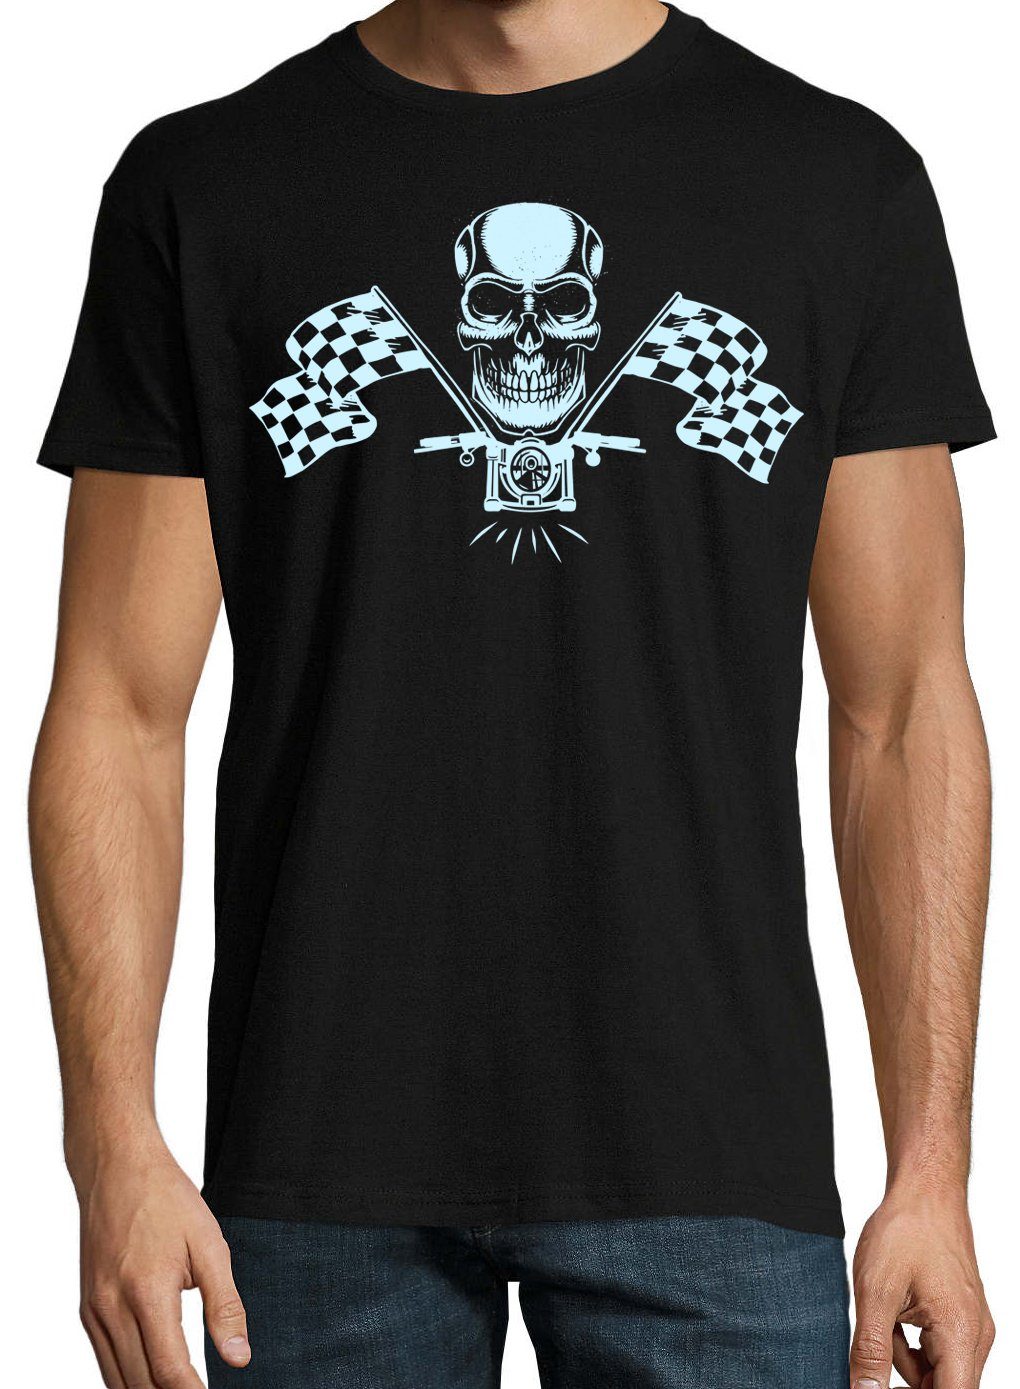 Designz Schwarz T-Shirt Youth T-Shirt Herren MotorradSkull